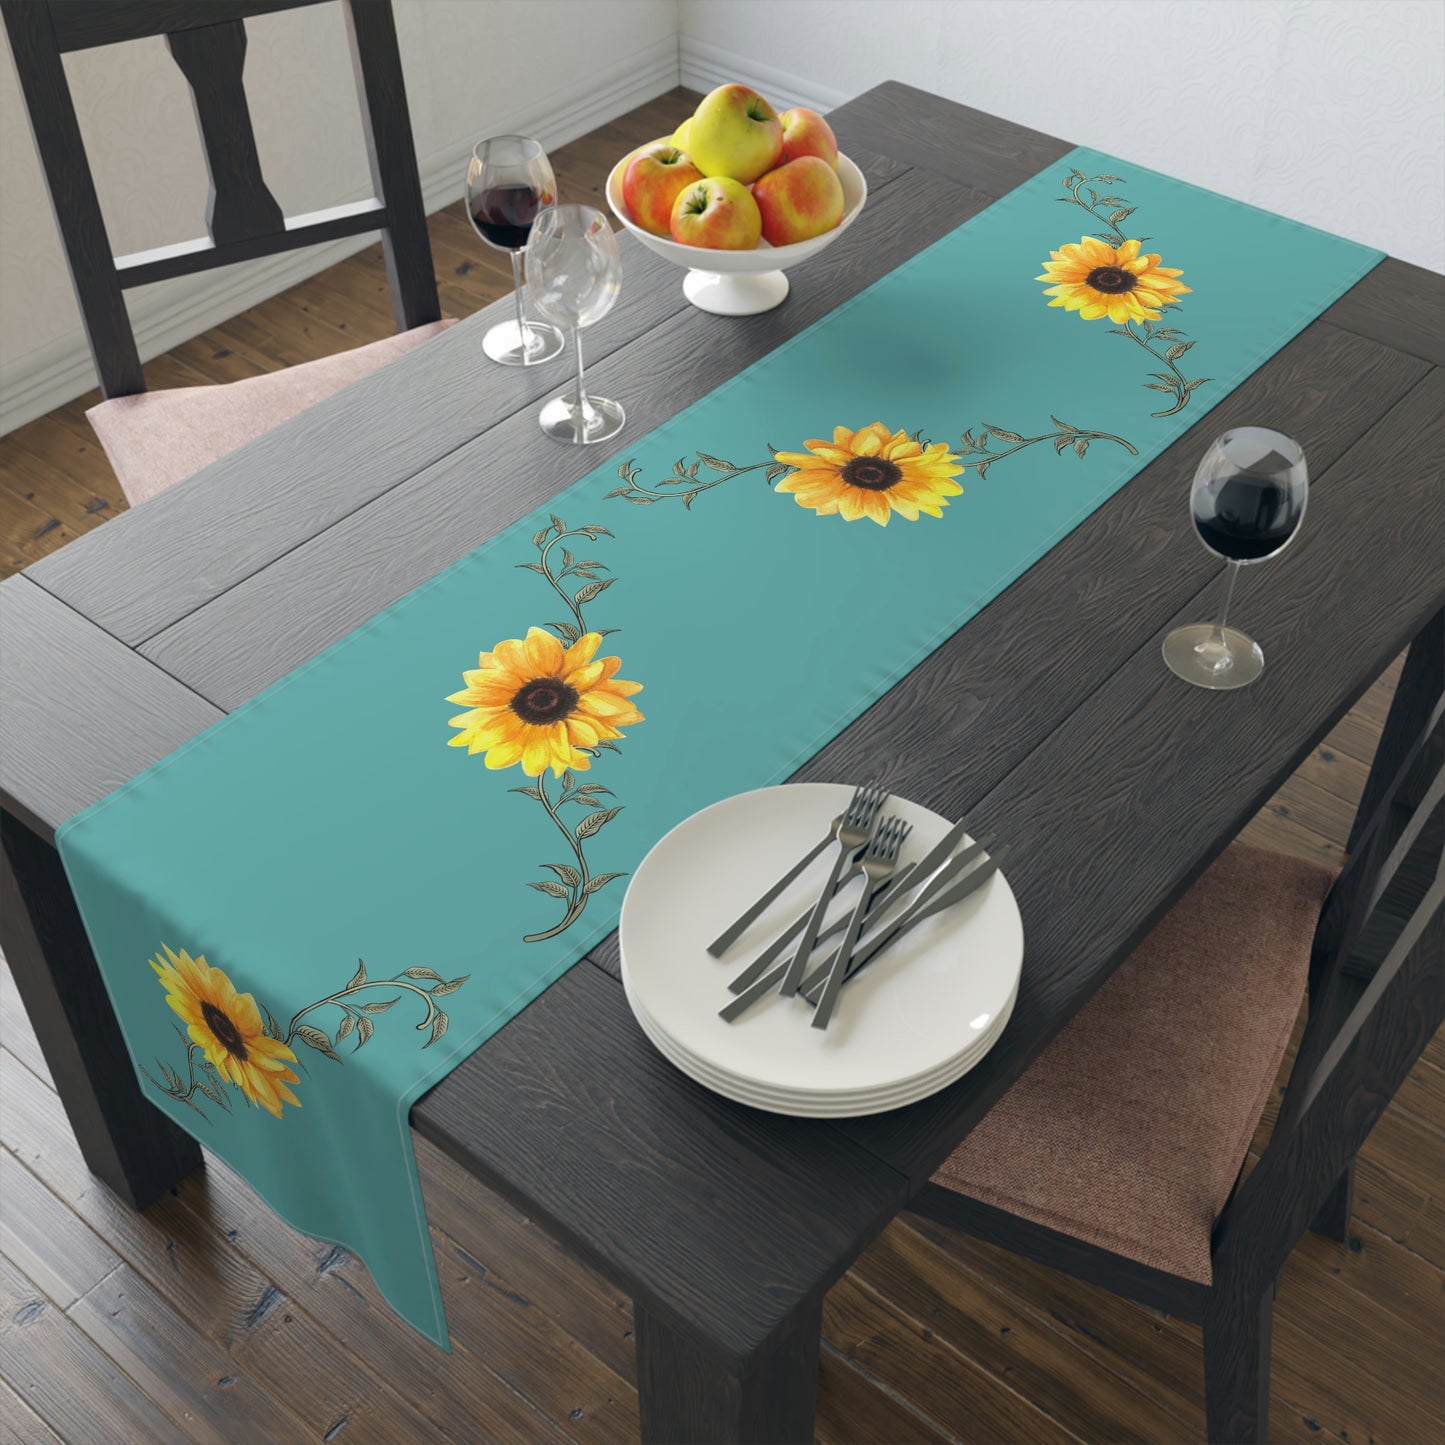 Sunflower Table Runner / Teal Table Runner / Sunflower Decor